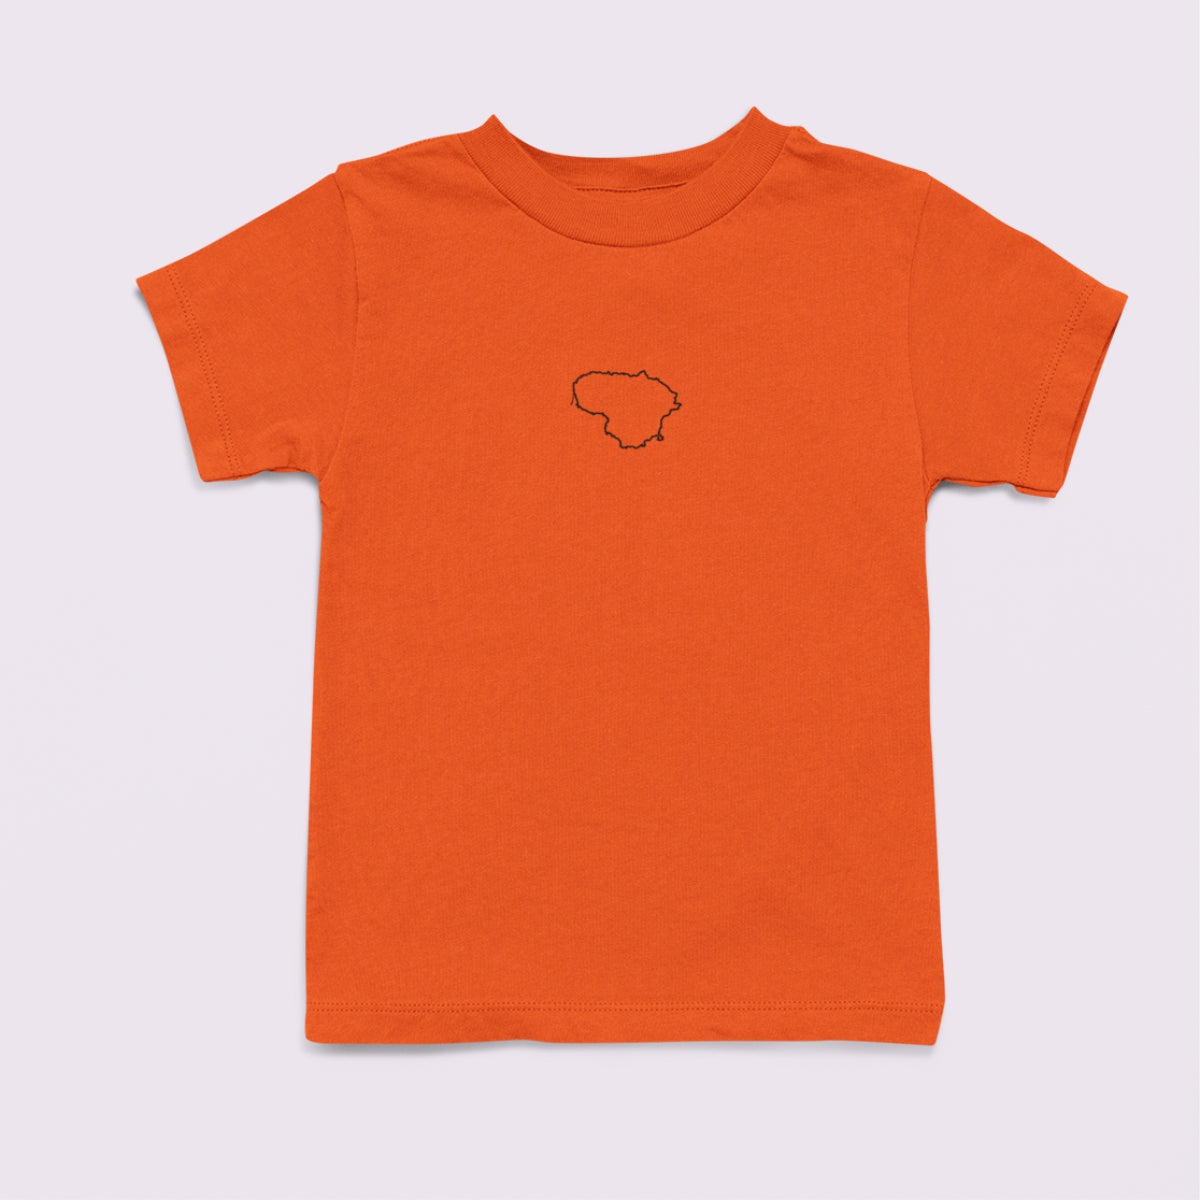 Oranžiniai vaikiški marškinėliai "Juodi Lietuvos kontūrai" PASKUTINIAI VIENETAI (Imperial kids)